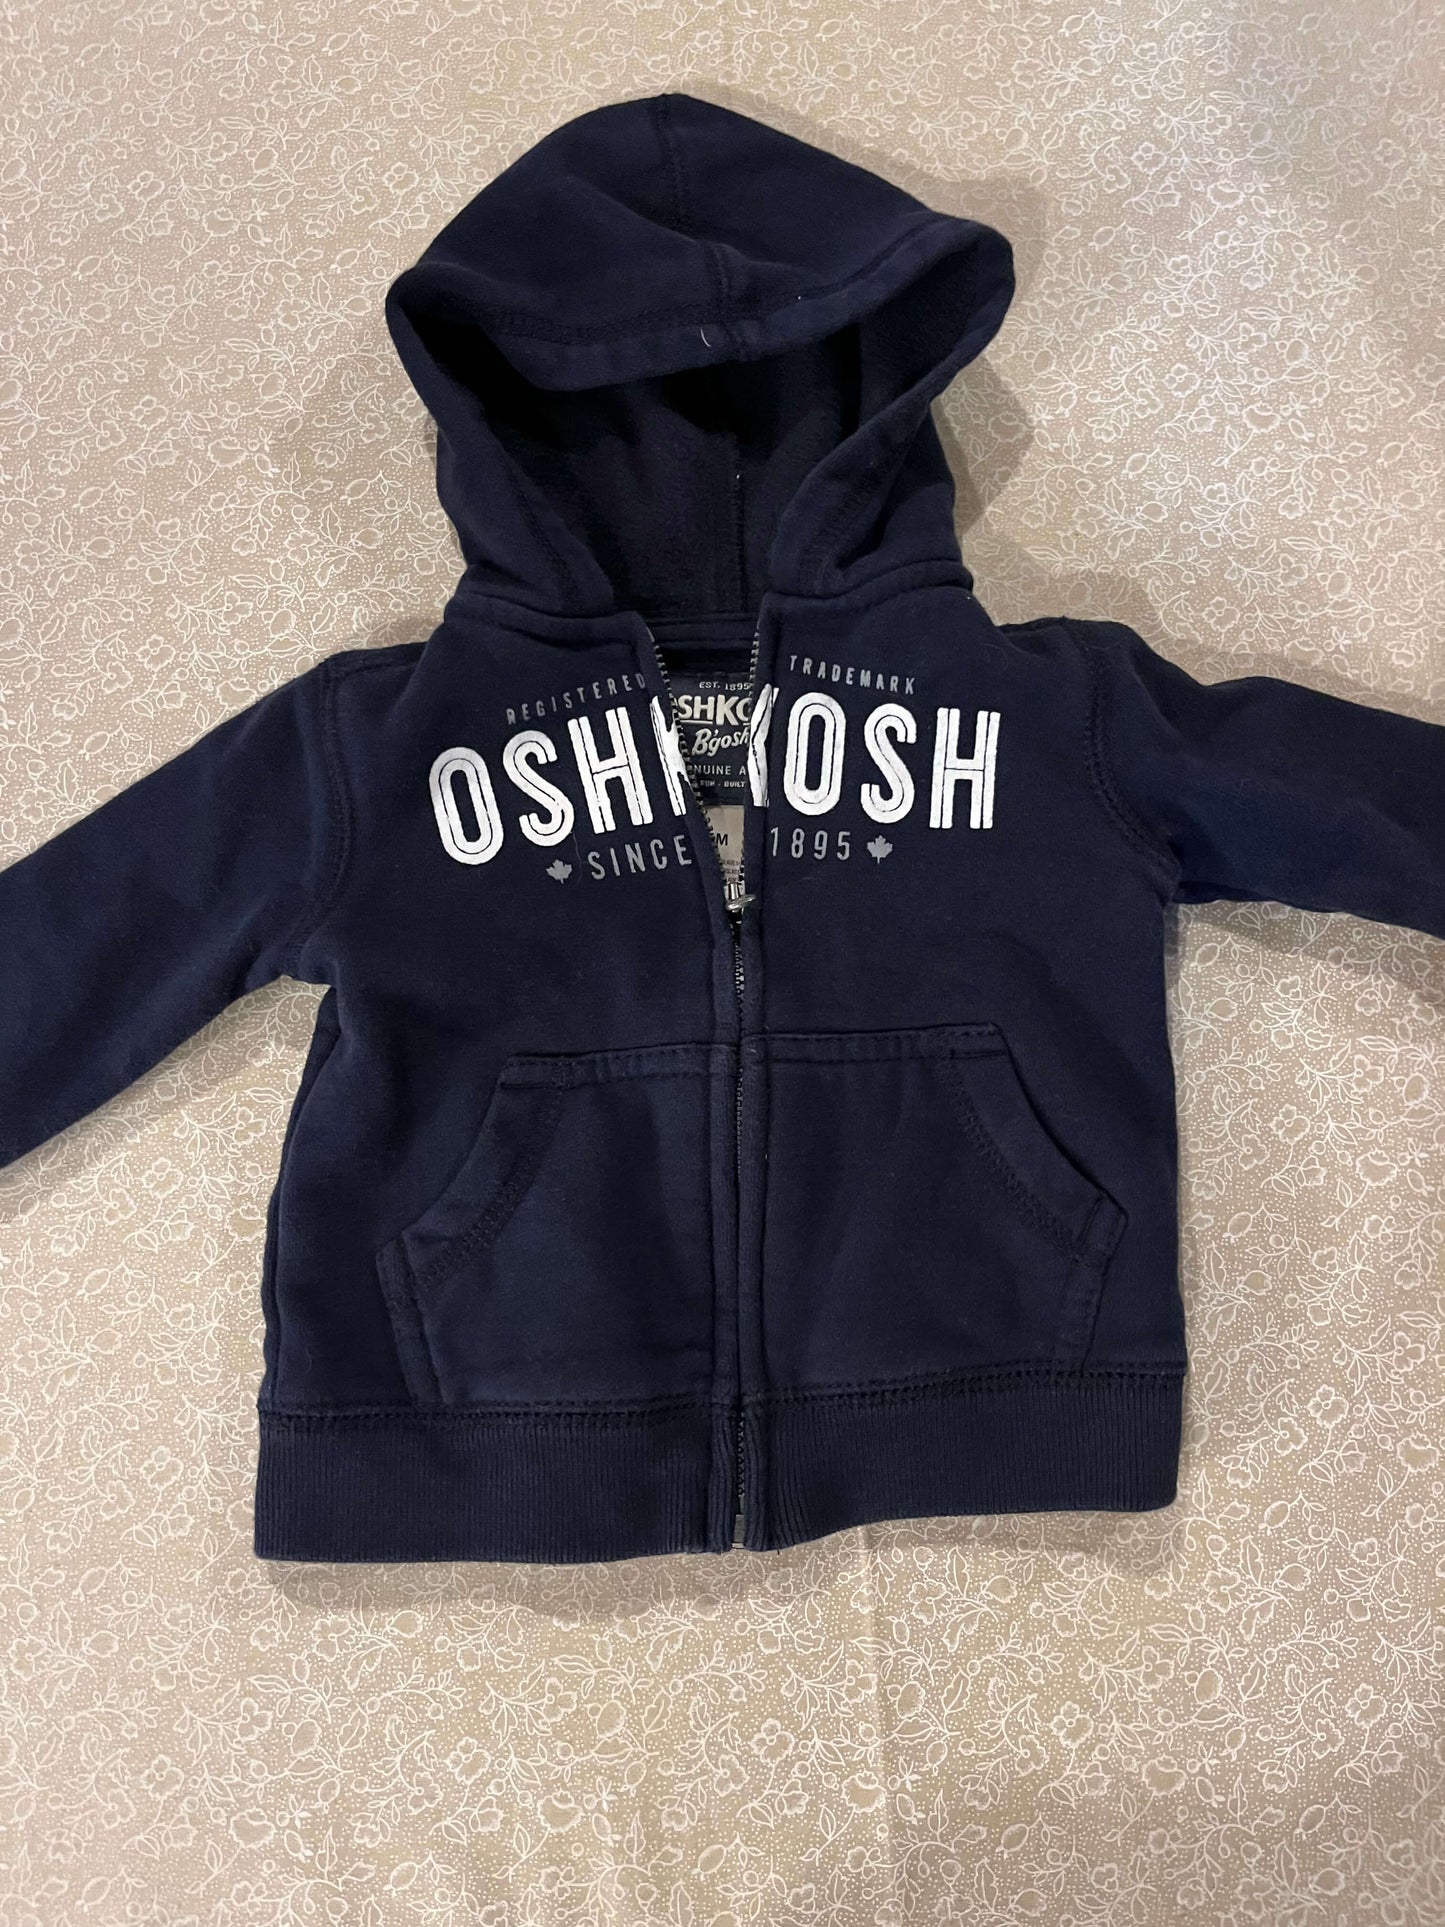 6-month-shirt-oshkosh-sweater-dark-blue